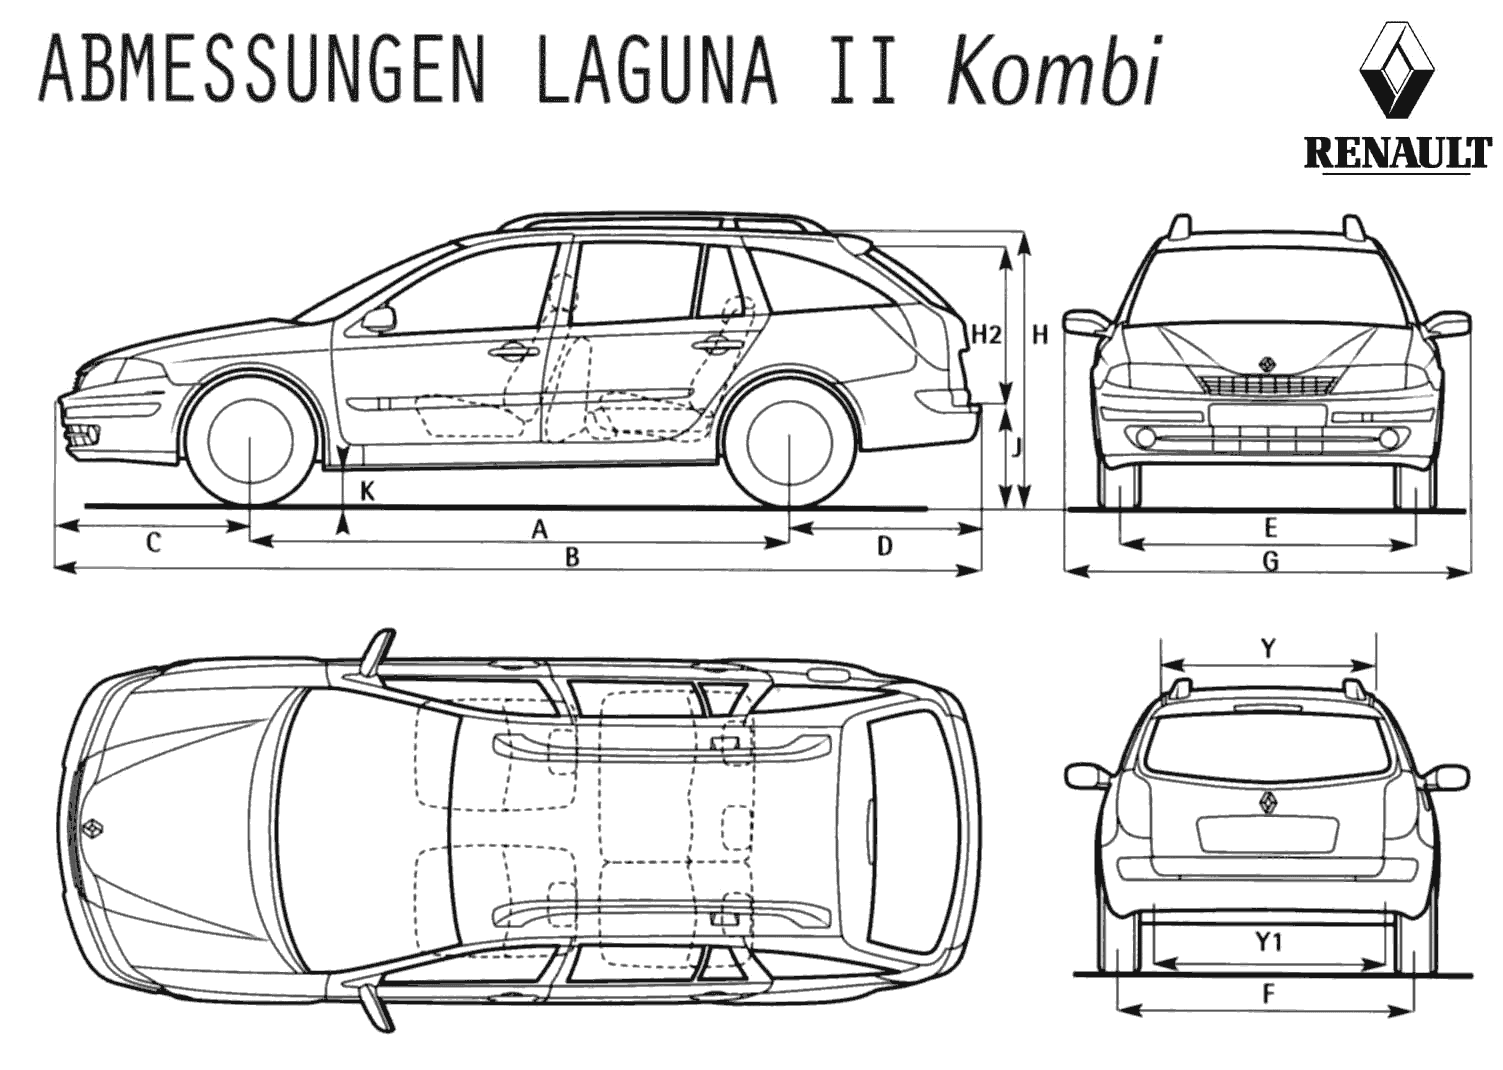 2000 Renault Laguna II Kombi Wagon blueprints free Outlines